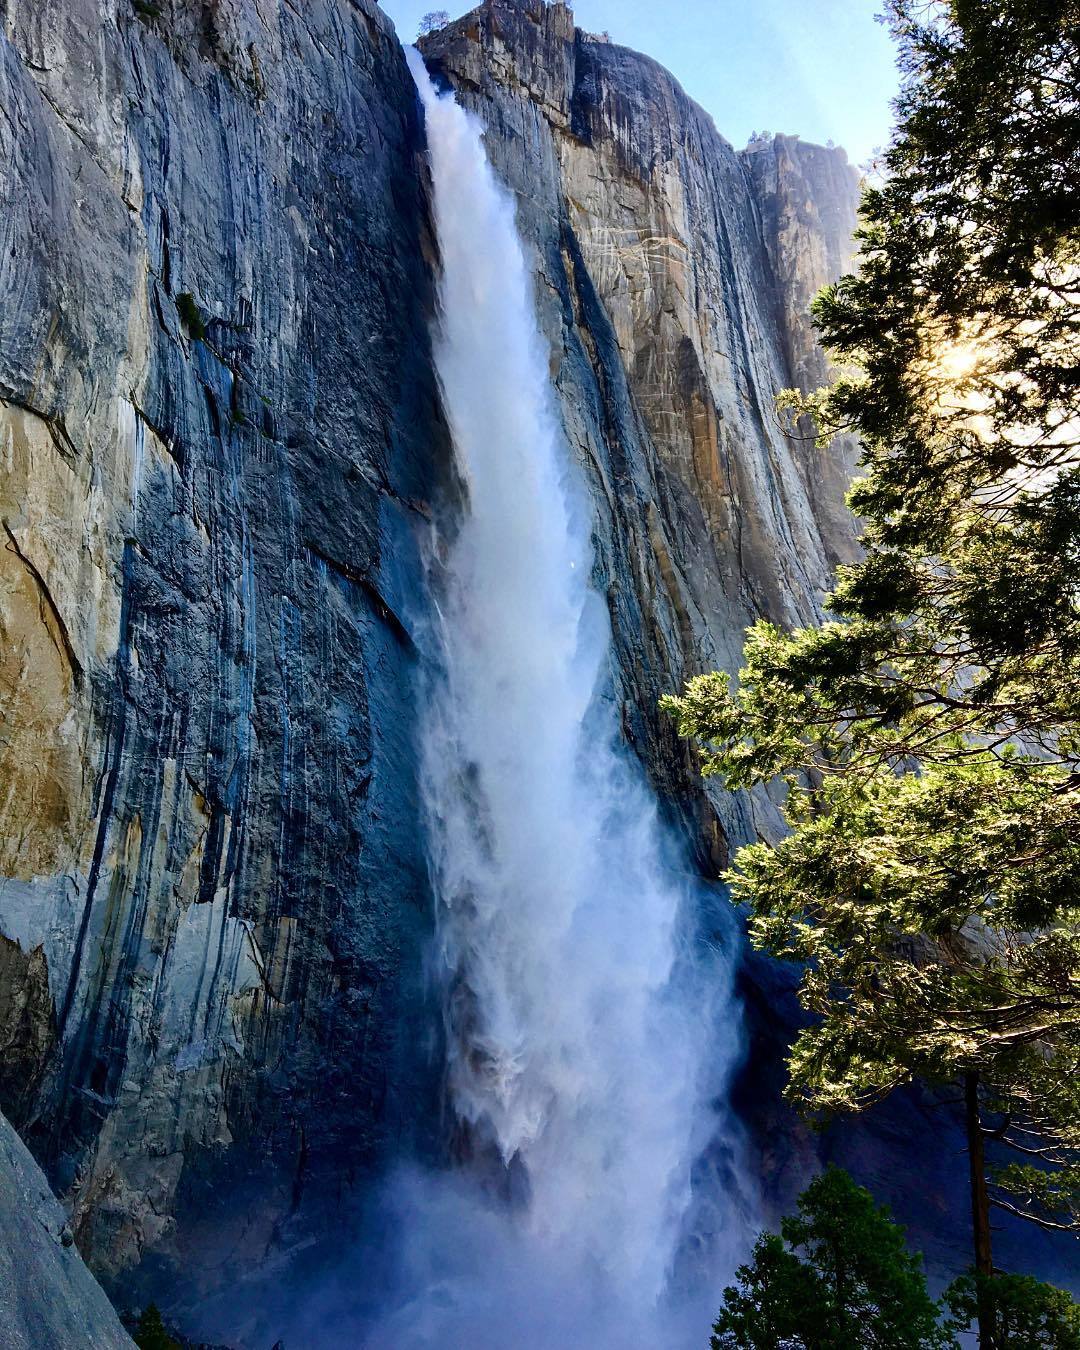 Upper Yosemite Fall. Photo: James McMillan